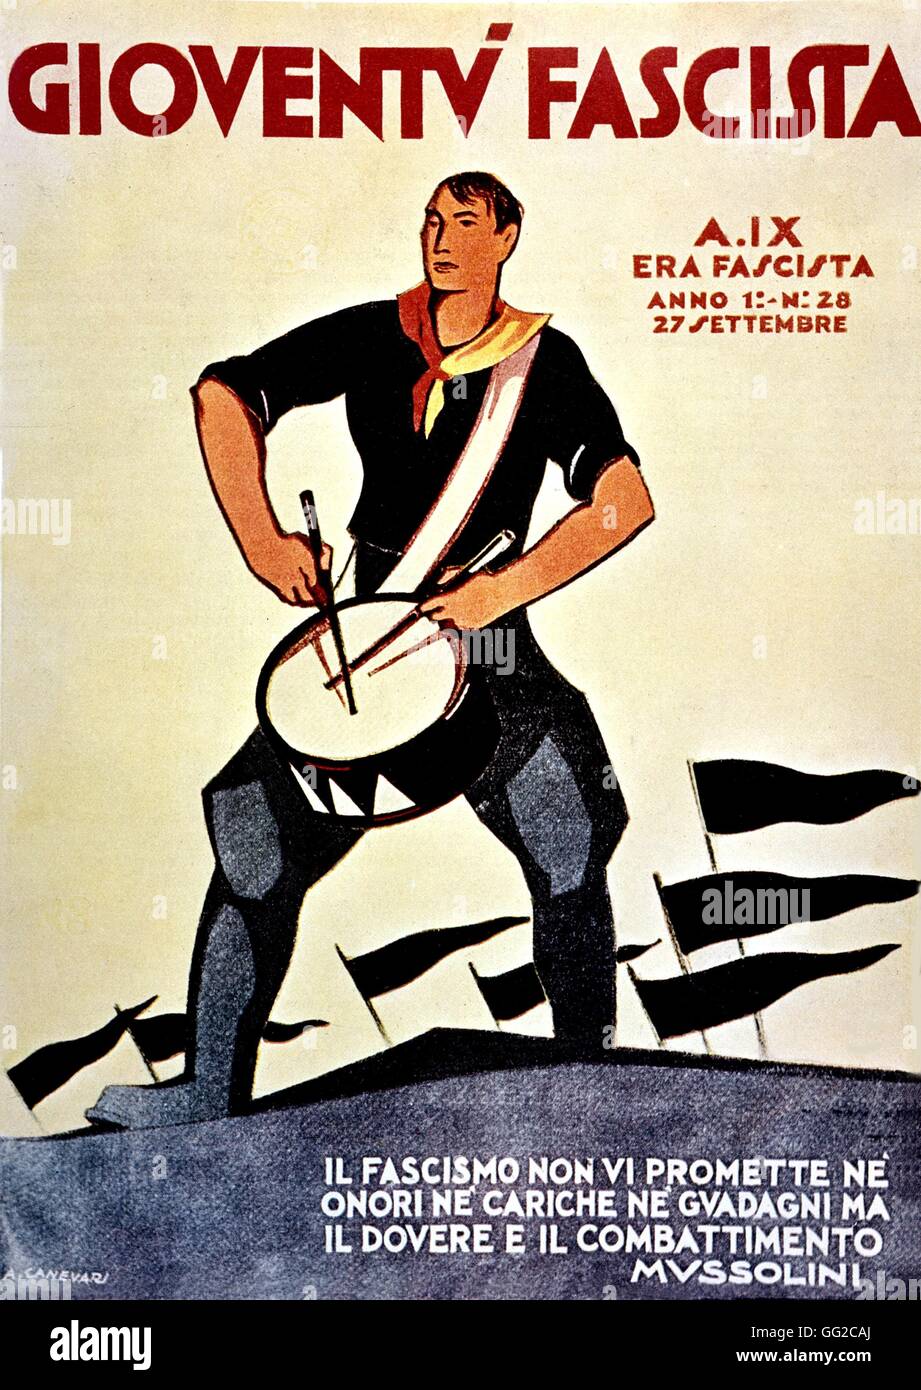 Couverture du journal fasciste italien "Gioventù fascista" publiés. N°28 du 27 septembre 1931 (première année de publication). Illustration A. Canevari Banque D'Images